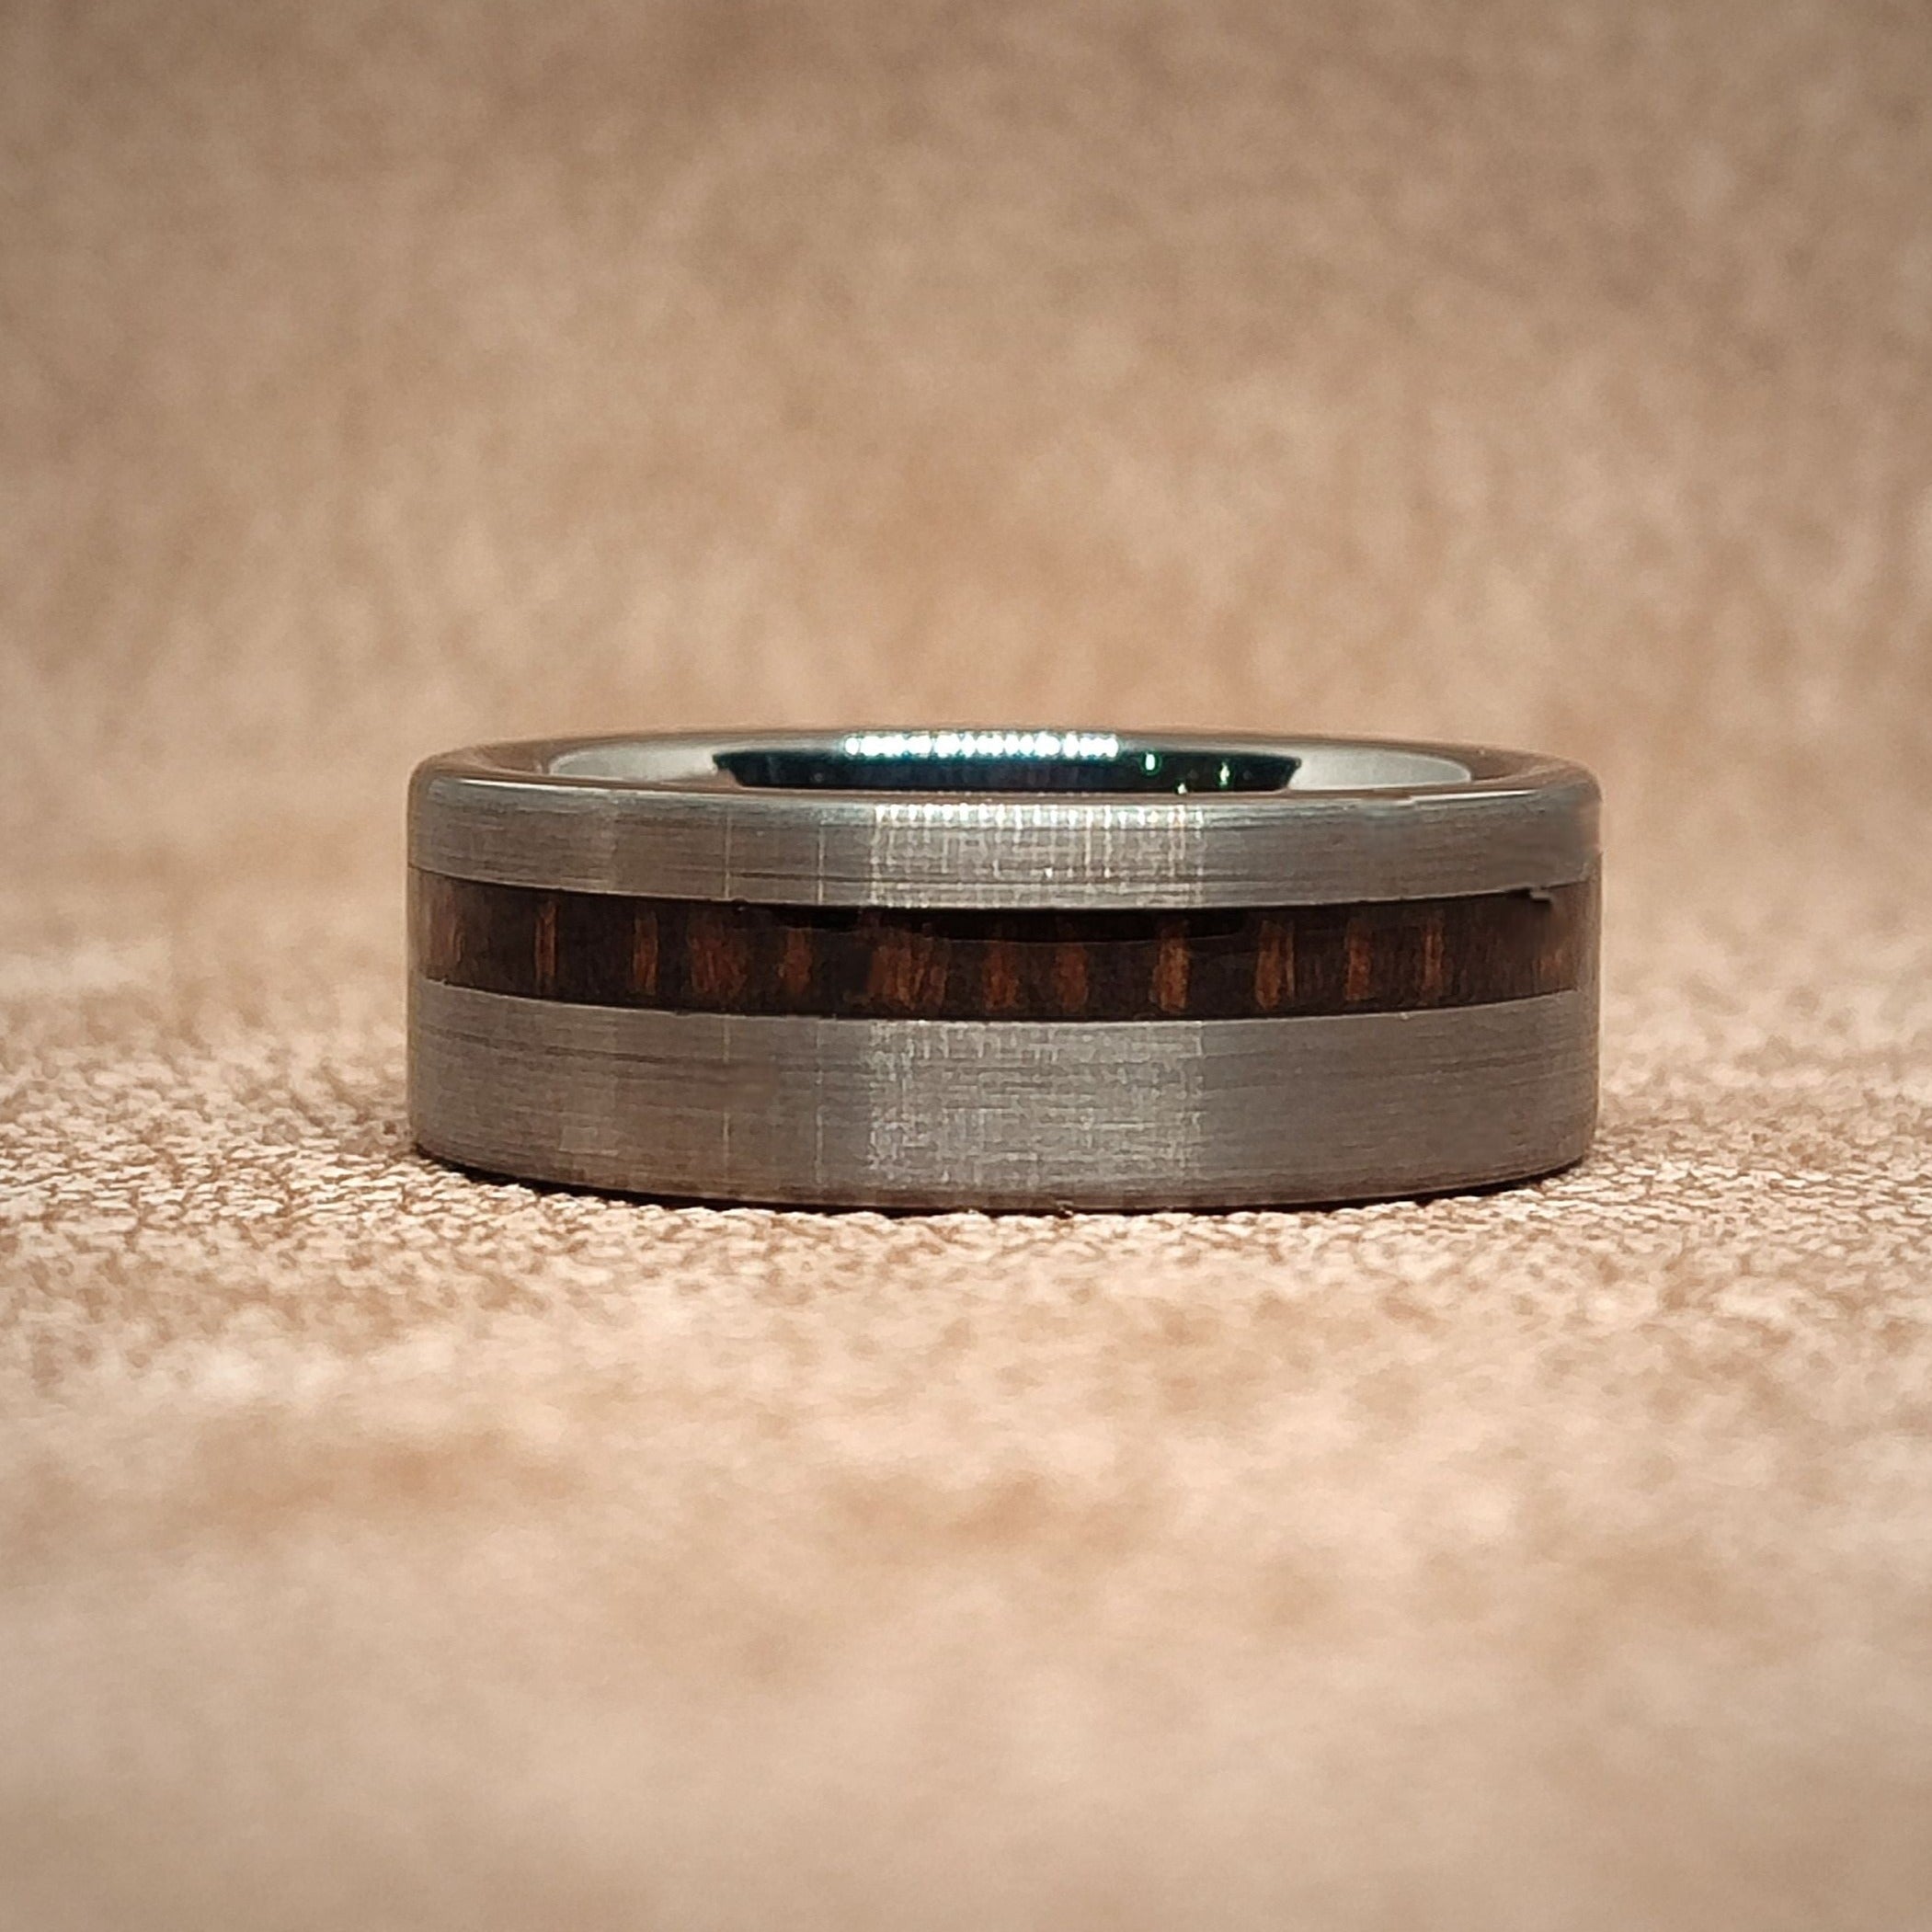 The Gun Dark - Zebra Wood Men's Tungsten Ring